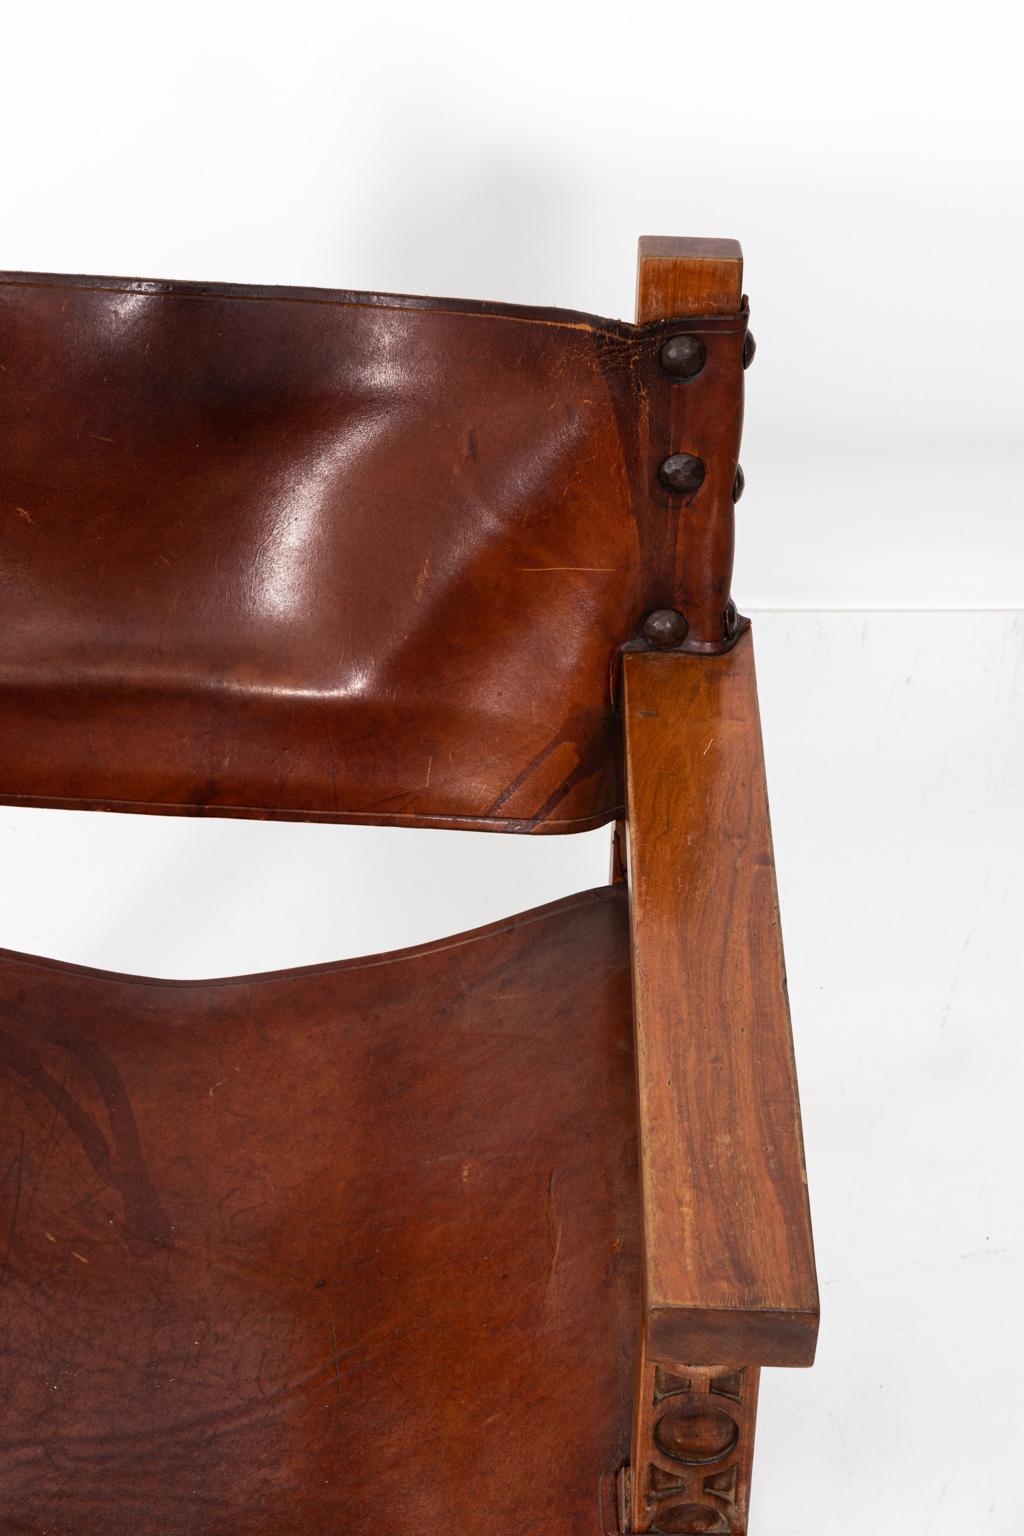 Spanish Leather Armchair 1